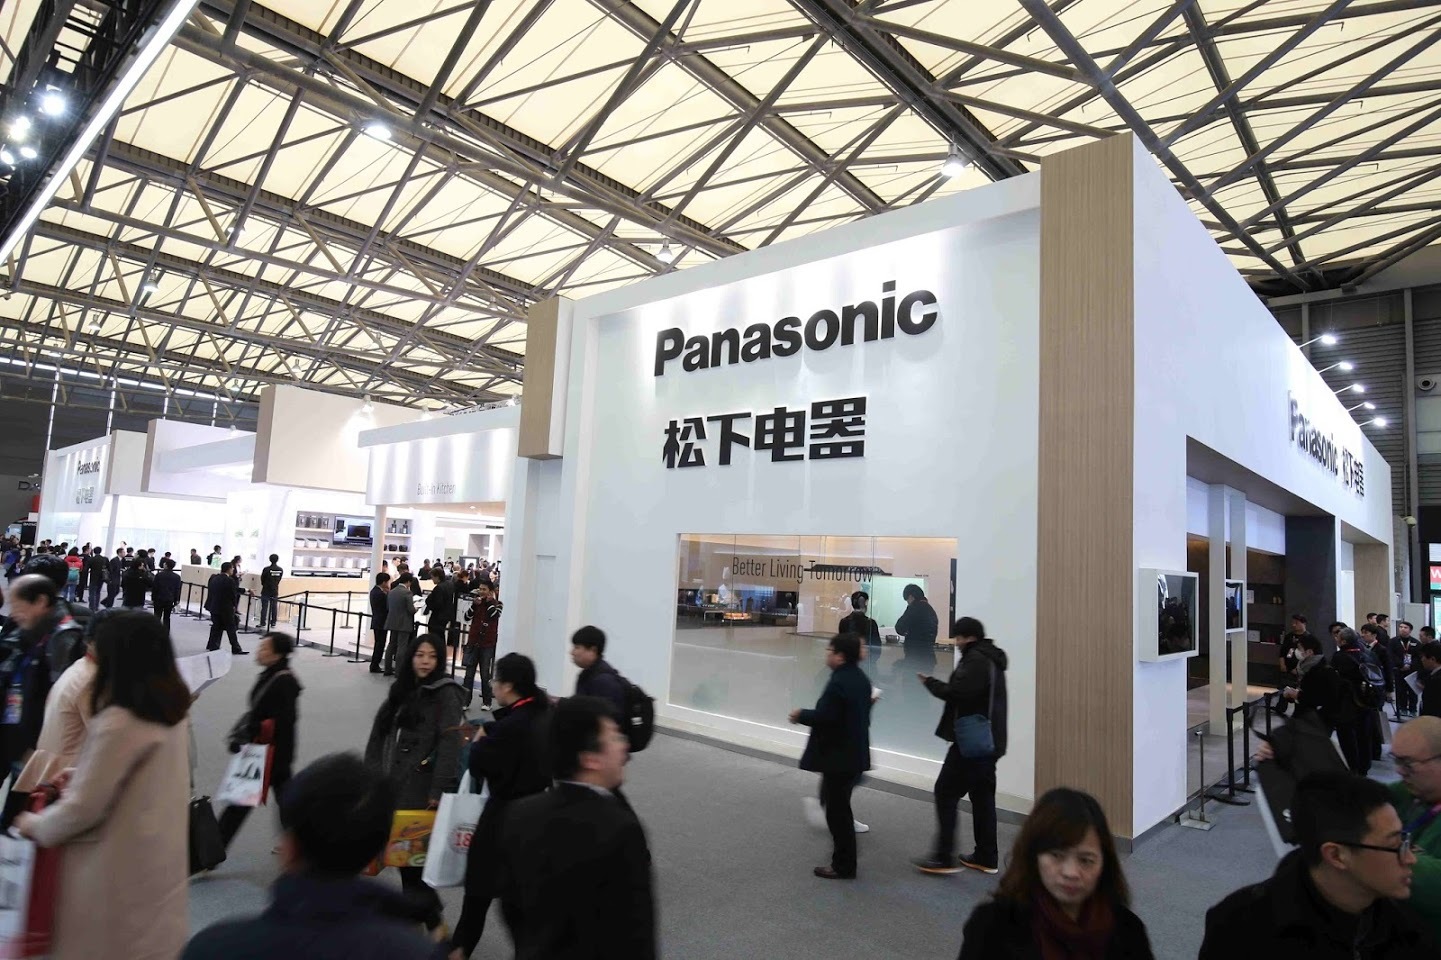 ziel tijdschrift Trouw Samenvatting: Panasonic schets op AWE 2016 toekomstige levensstijlen 'waar  iedereen naar verlangt' met expo van hoogwaardige thuistoepassingen |  Business Wire